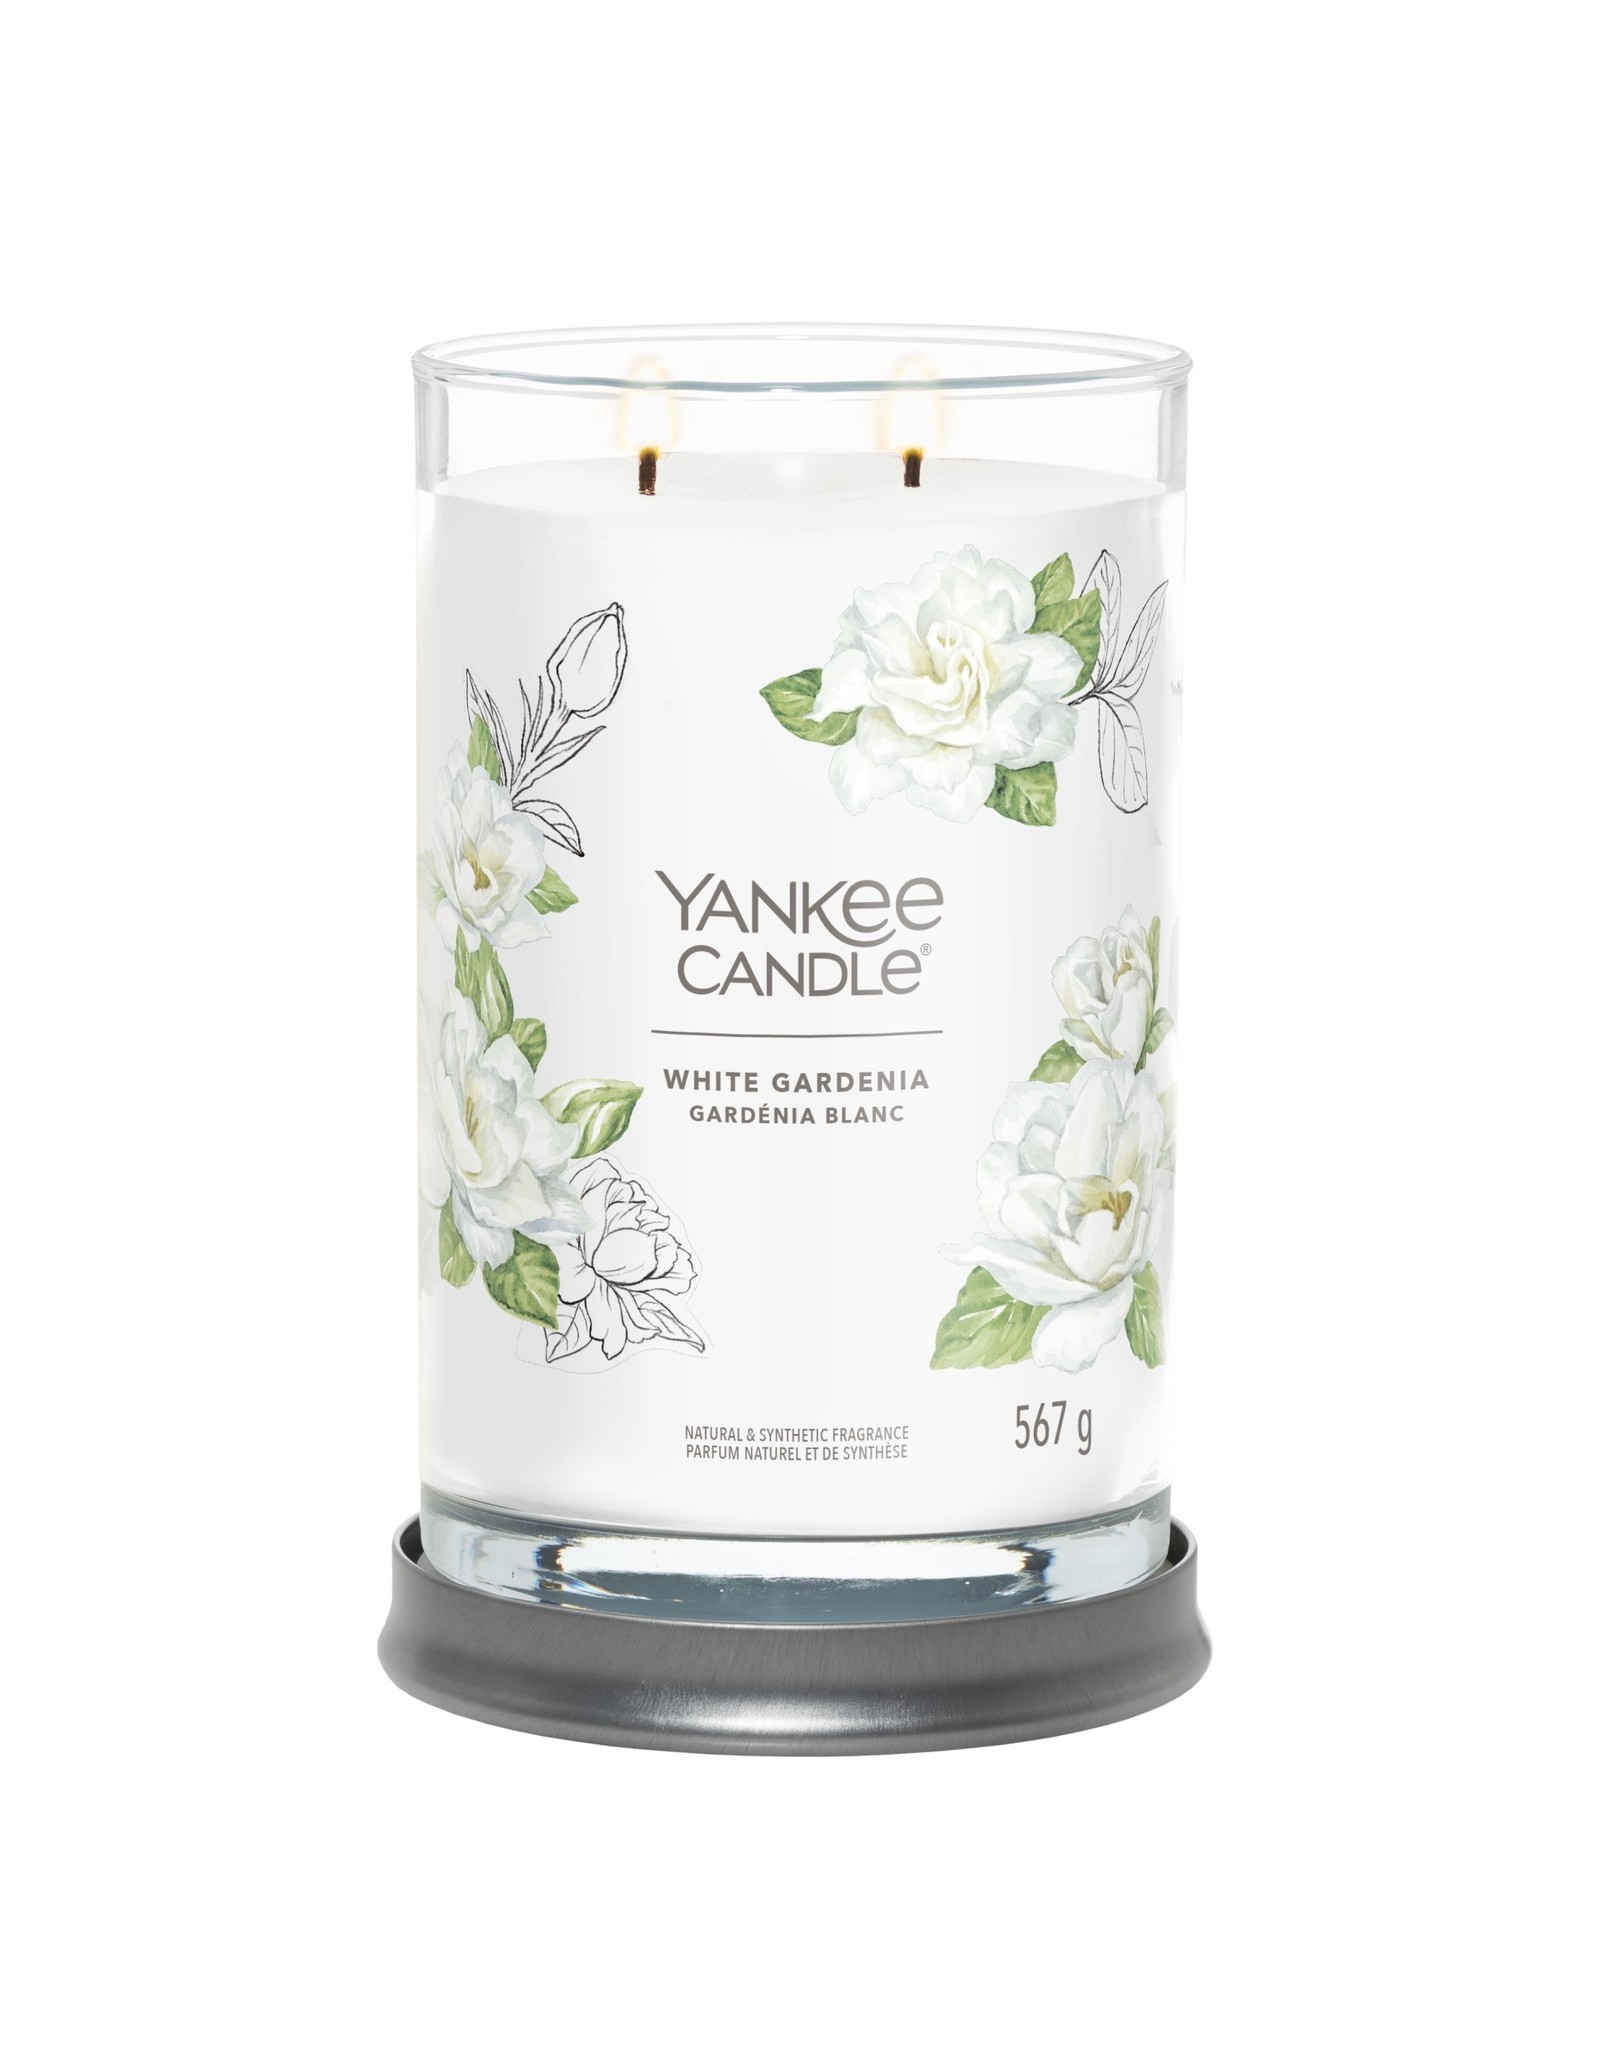 Yankee Candle White Gardenia -  Signature Large Tumbler